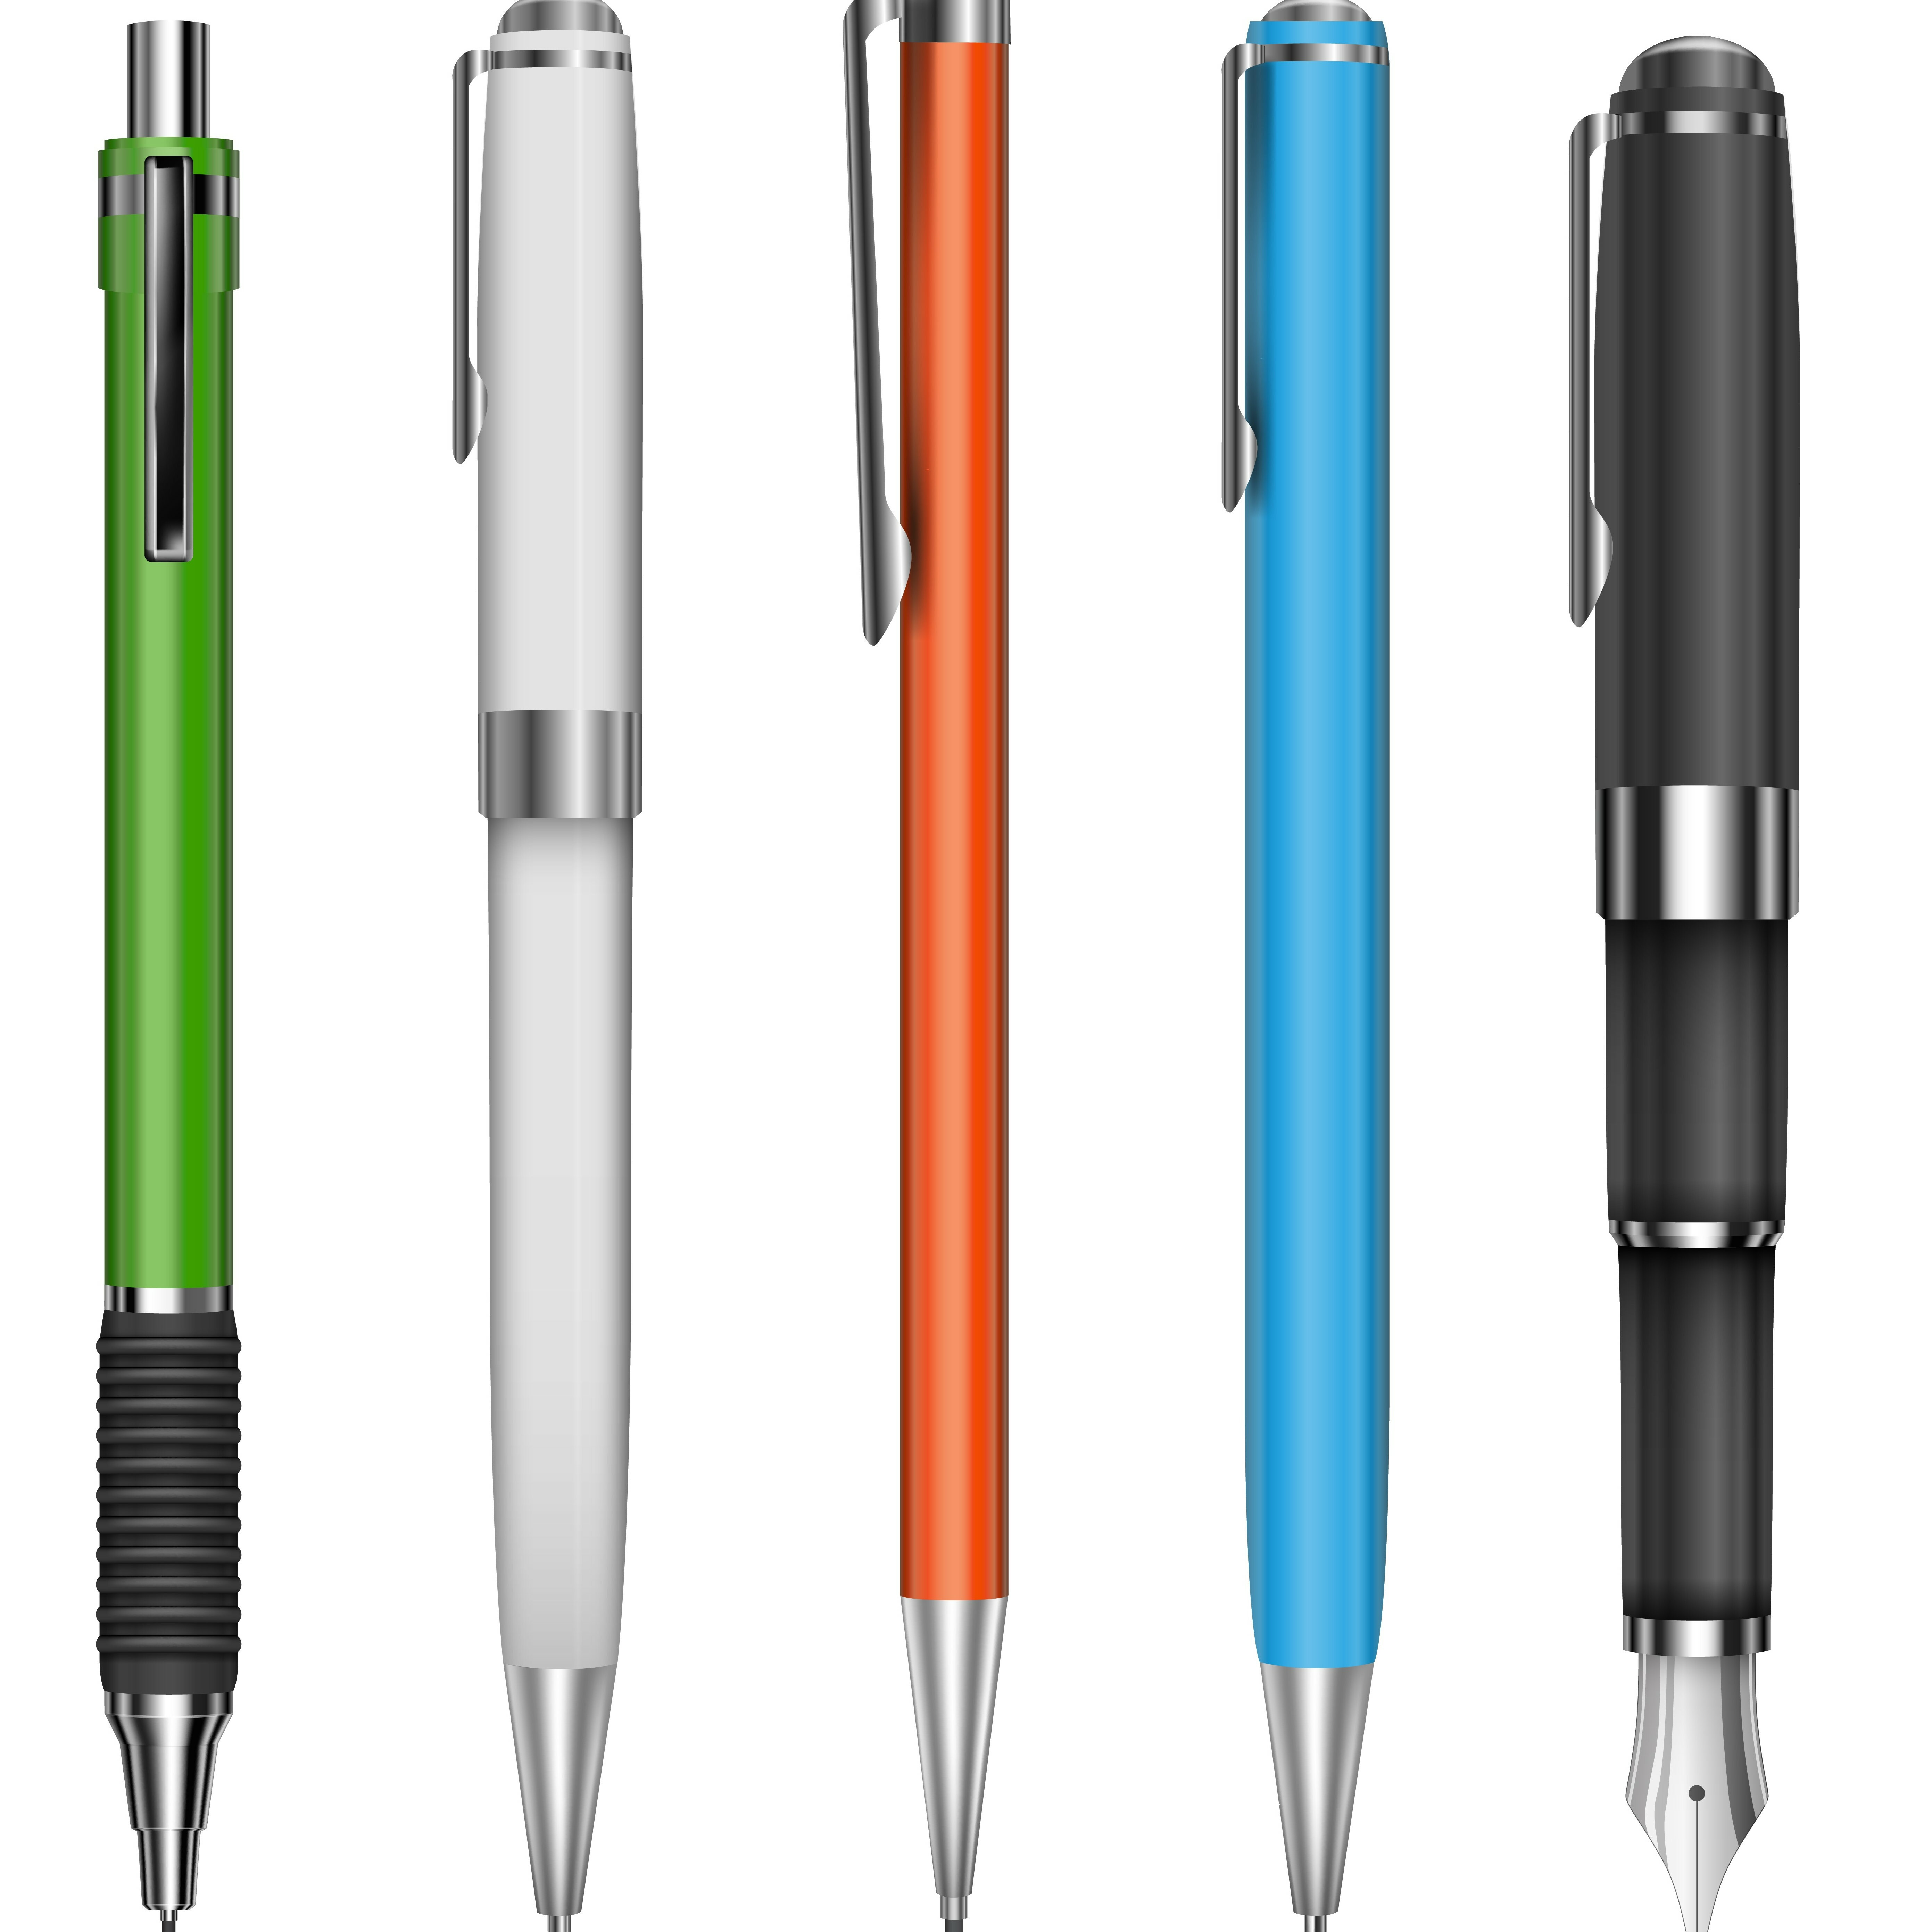 Promo Ink: Pens Still Make Great Branding Tools